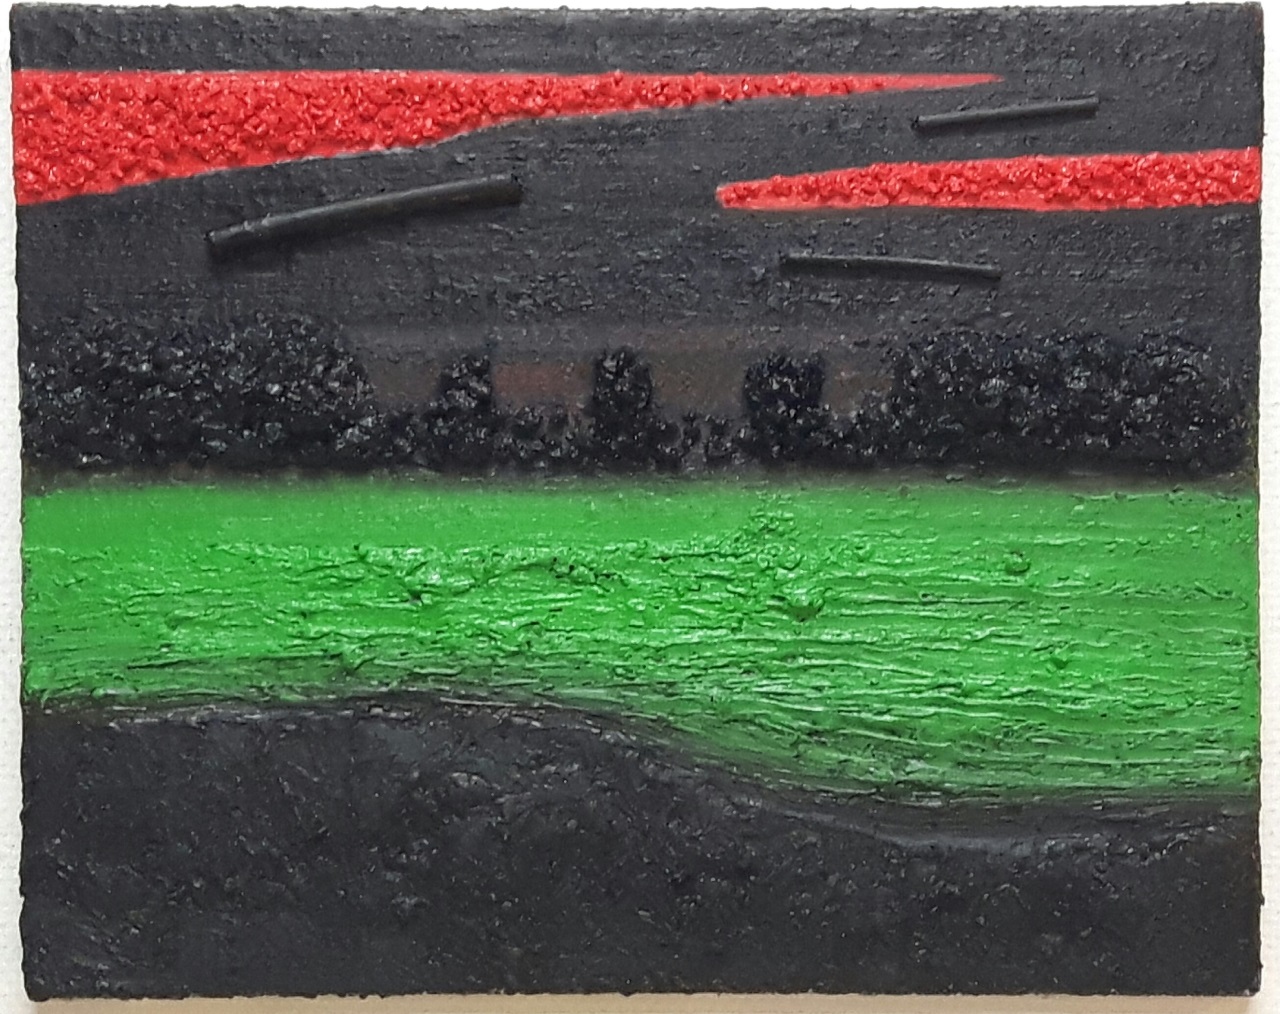 Soil/falling apart, oil-mixedmedia on canvas, 40x50cm